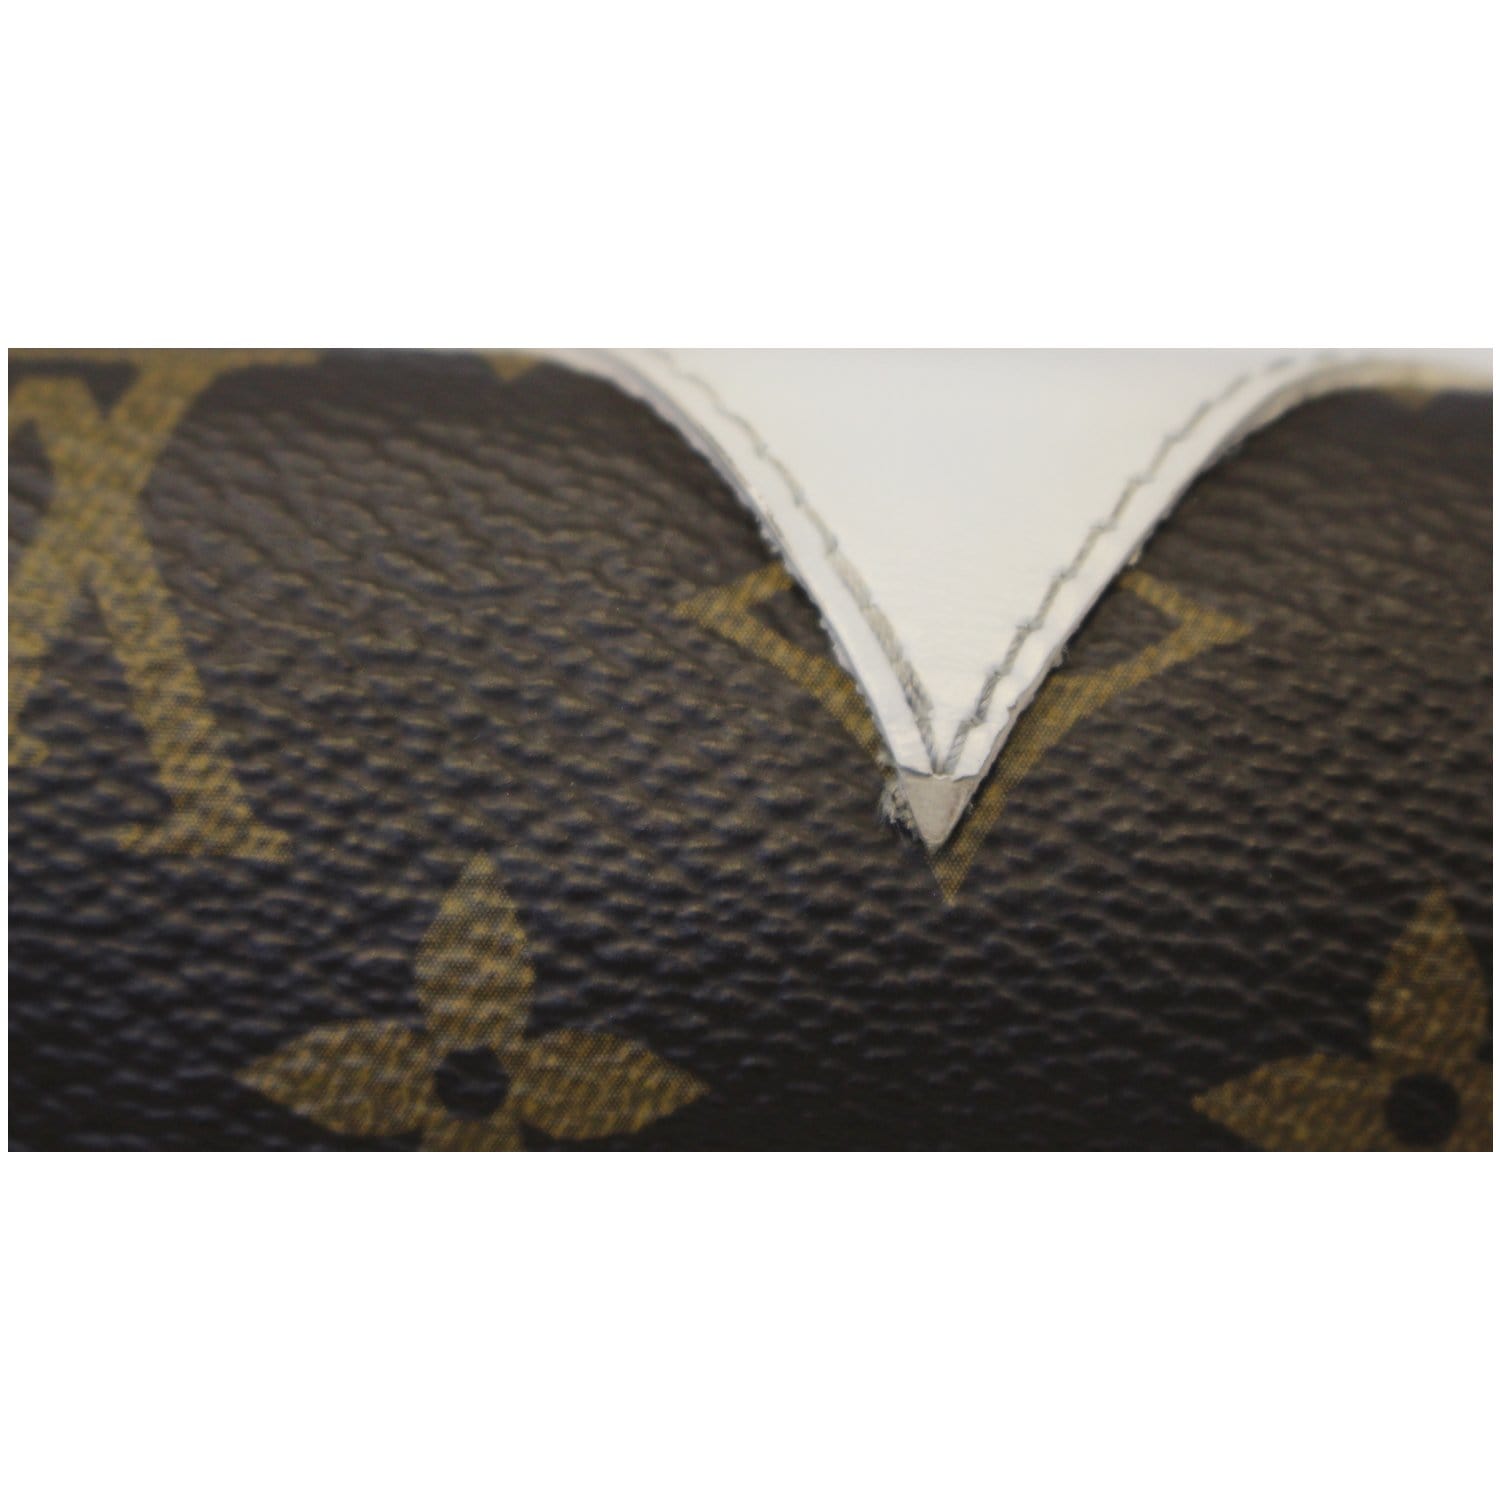 Louis Vuitton Pochette Felicie Monogram Limited Edition Owl Motif